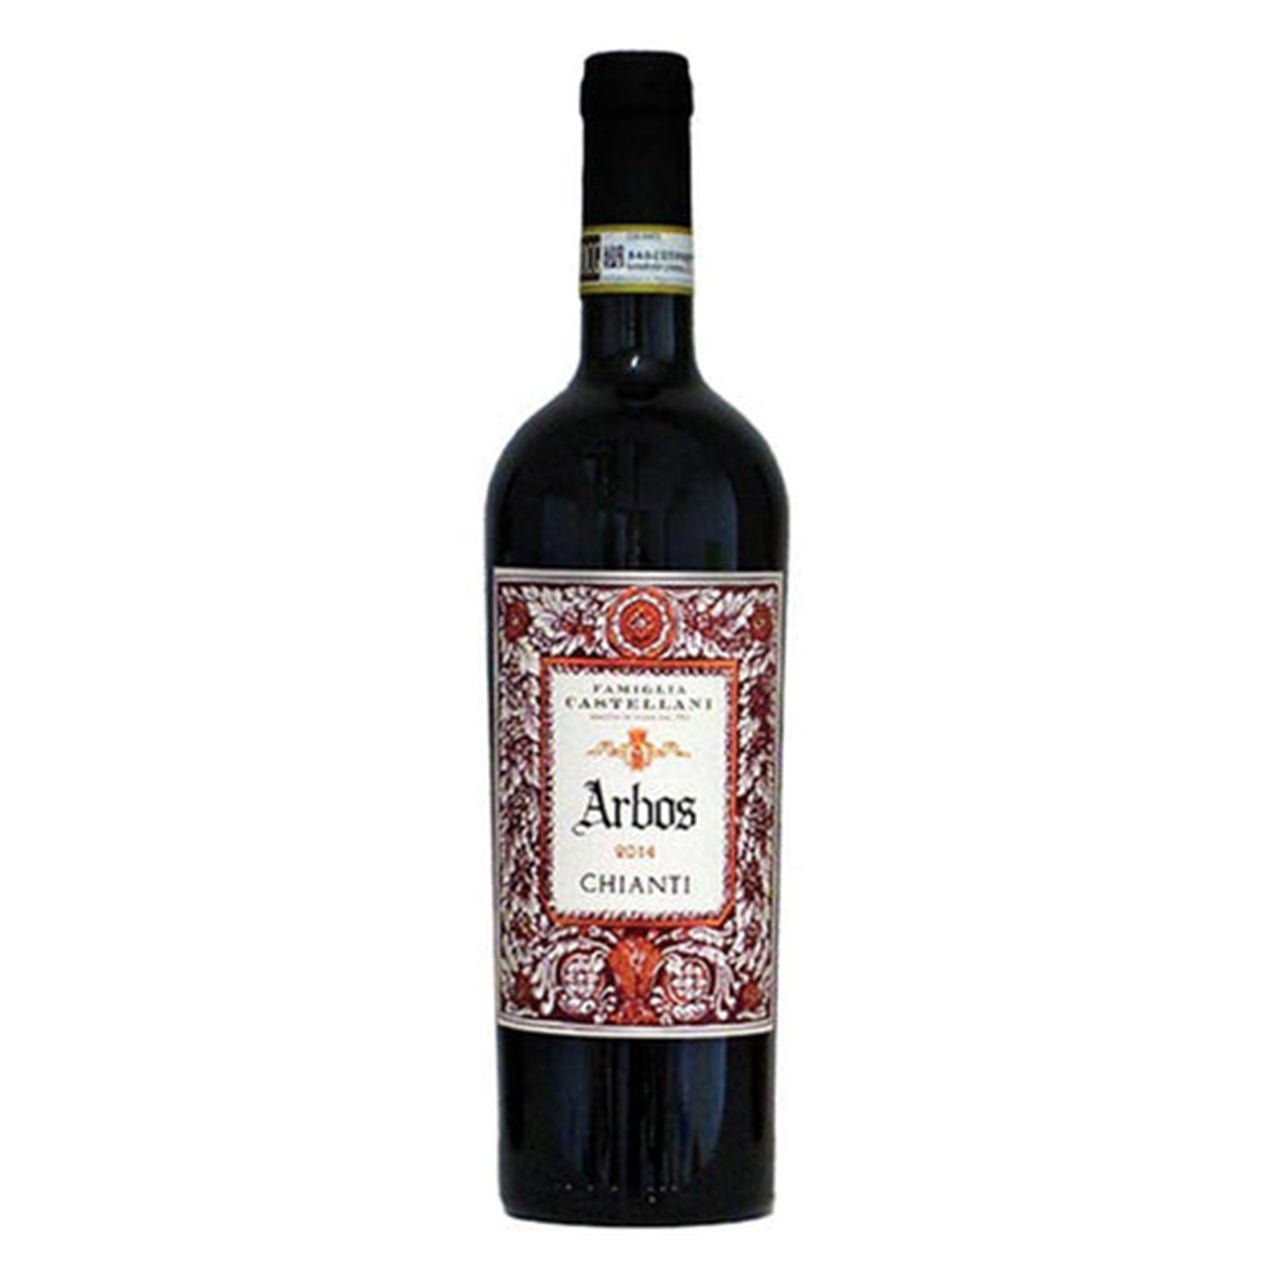 Castellani Chianti Arbos 2022 - Wine Italy Red - Liquor Wine Cave